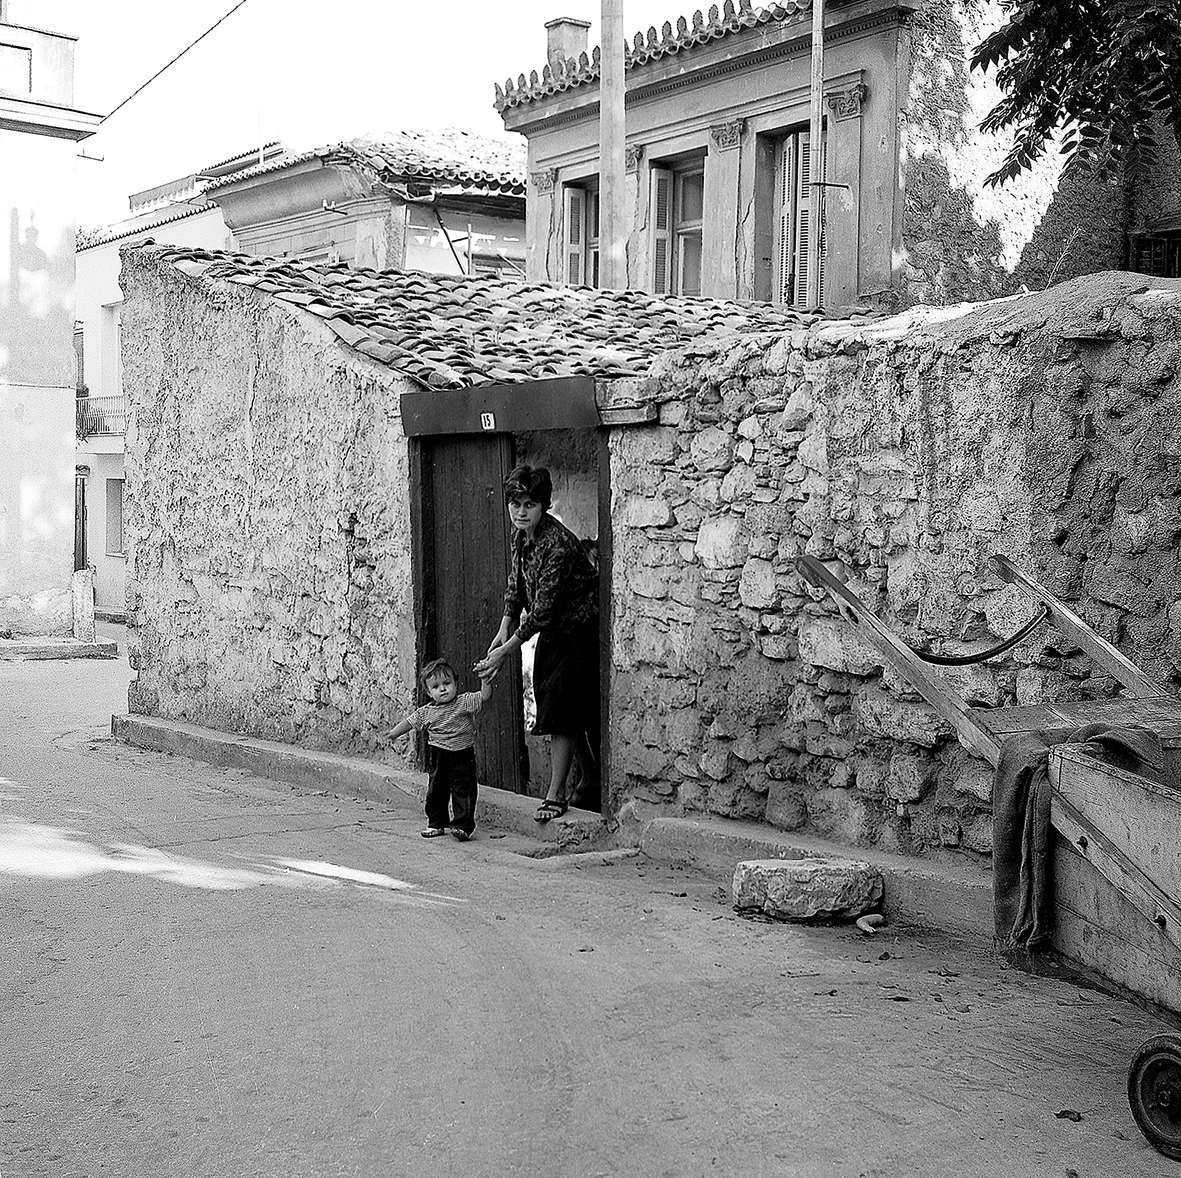 Η Αθήνα των 60s μέσα από 10 φωτογραφίες! Όπως την απαθανάτισε η Κατερίνα Ζωιτοπούλου - Μαυροκεφαλίδου